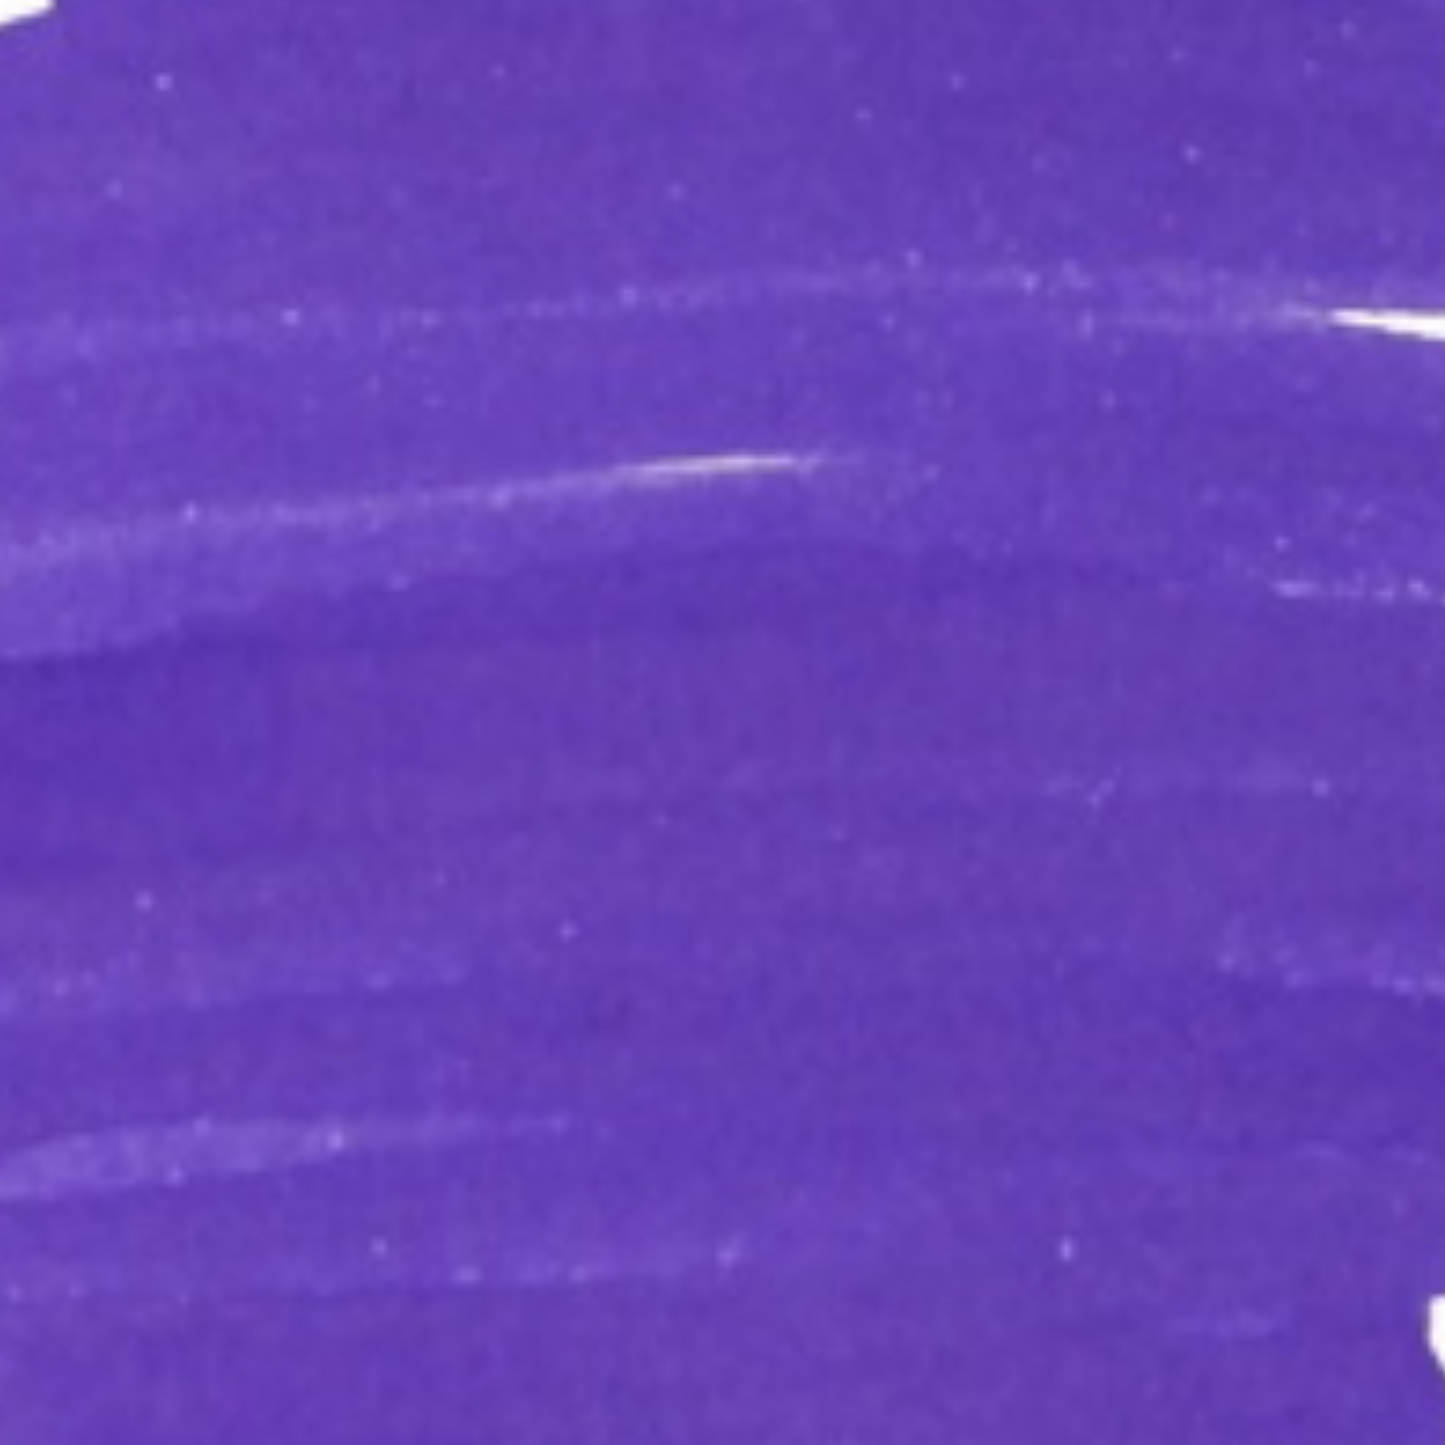 J. Herbin Violette (Violet) - Scented Fountain Pen Ink